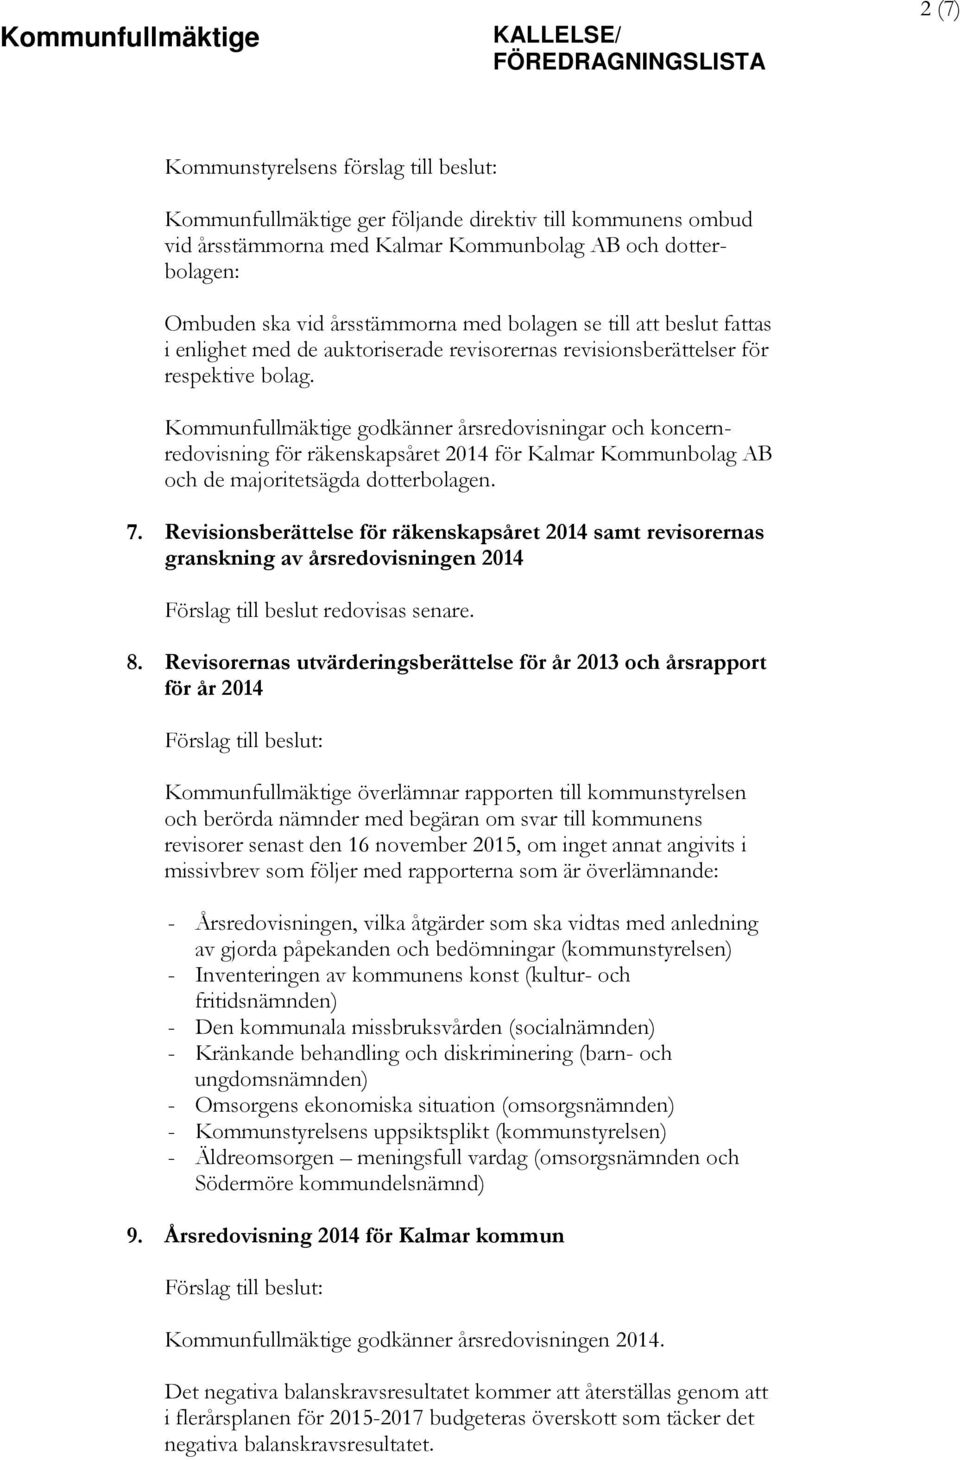 Kommunfullmäktige godkänner årsredovisningar och koncernredovisning för räkenskapsåret 2014 för Kalmar Kommunbolag AB och de majoritetsägda dotterbolagen. 7.